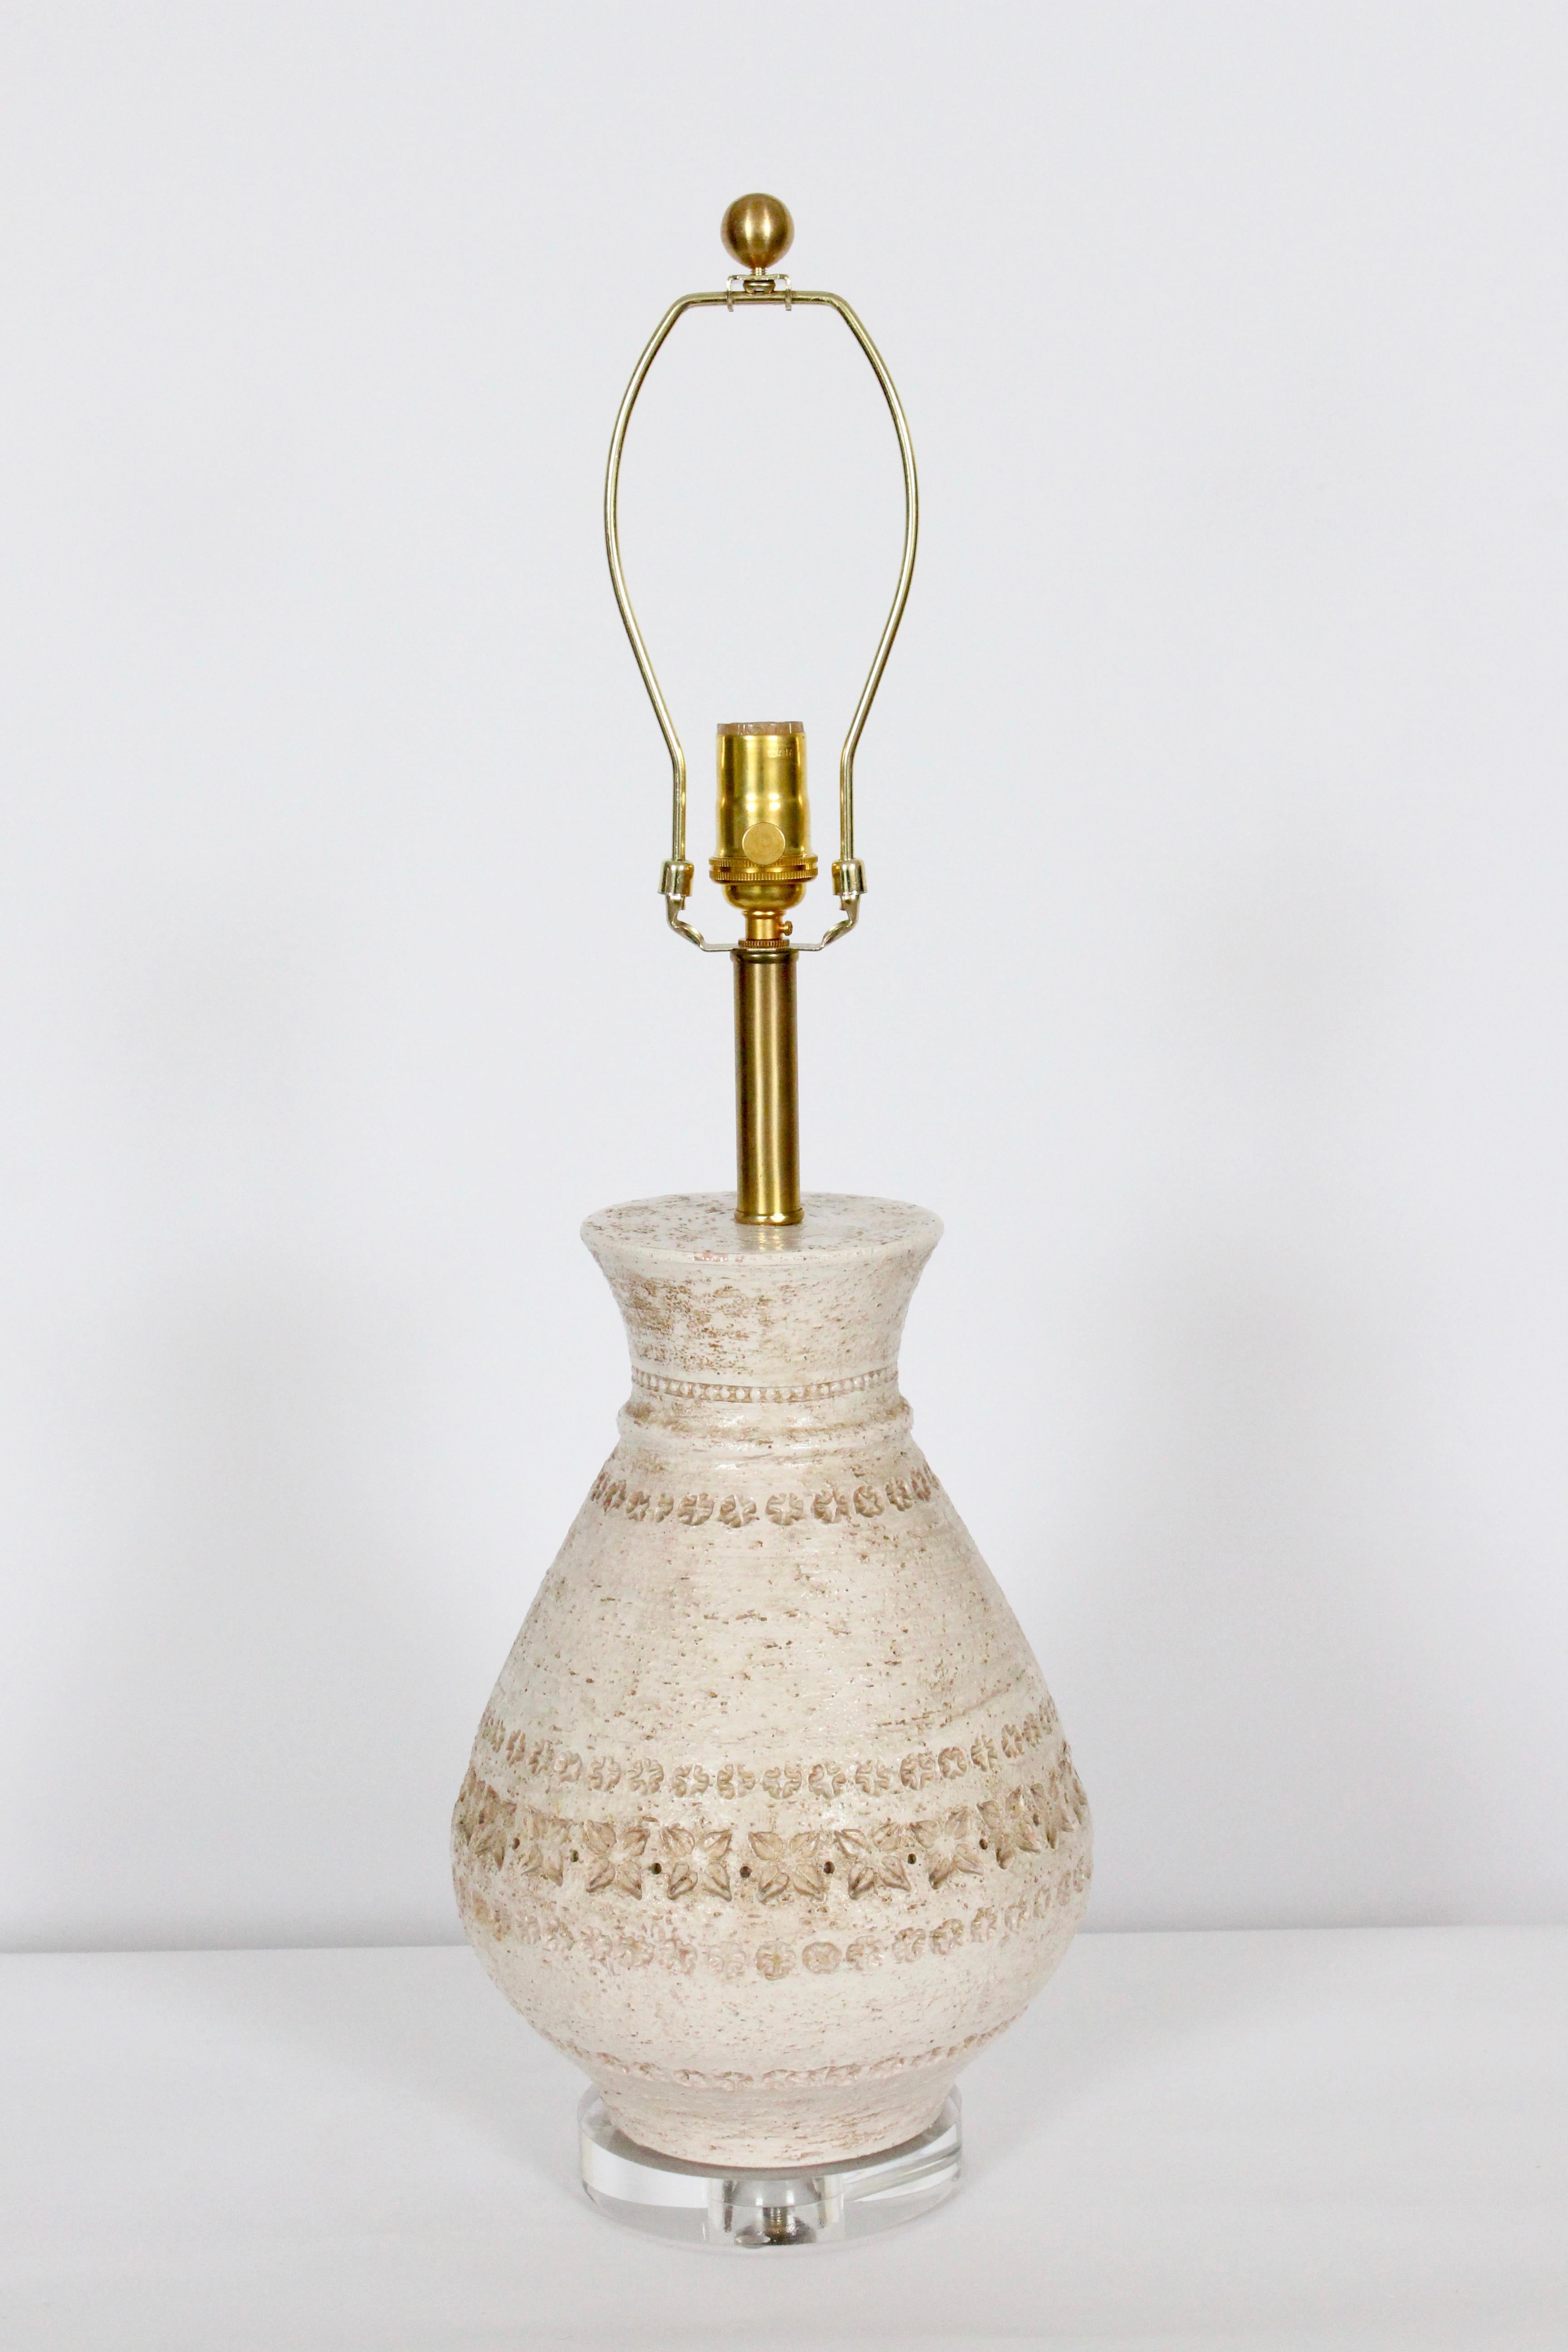 Aldo Londi Bitossi für Bitossi handgefertigte Art Pottery Keramik Tischlampe, 1950er Jahre. Mit einer klassisch strukturierten, handdekorierten, glasierten Flaschenform auf klarem, rundem Lucite-Sockel mit Tan-, Beige-, Off White- und Cream-Tönen.